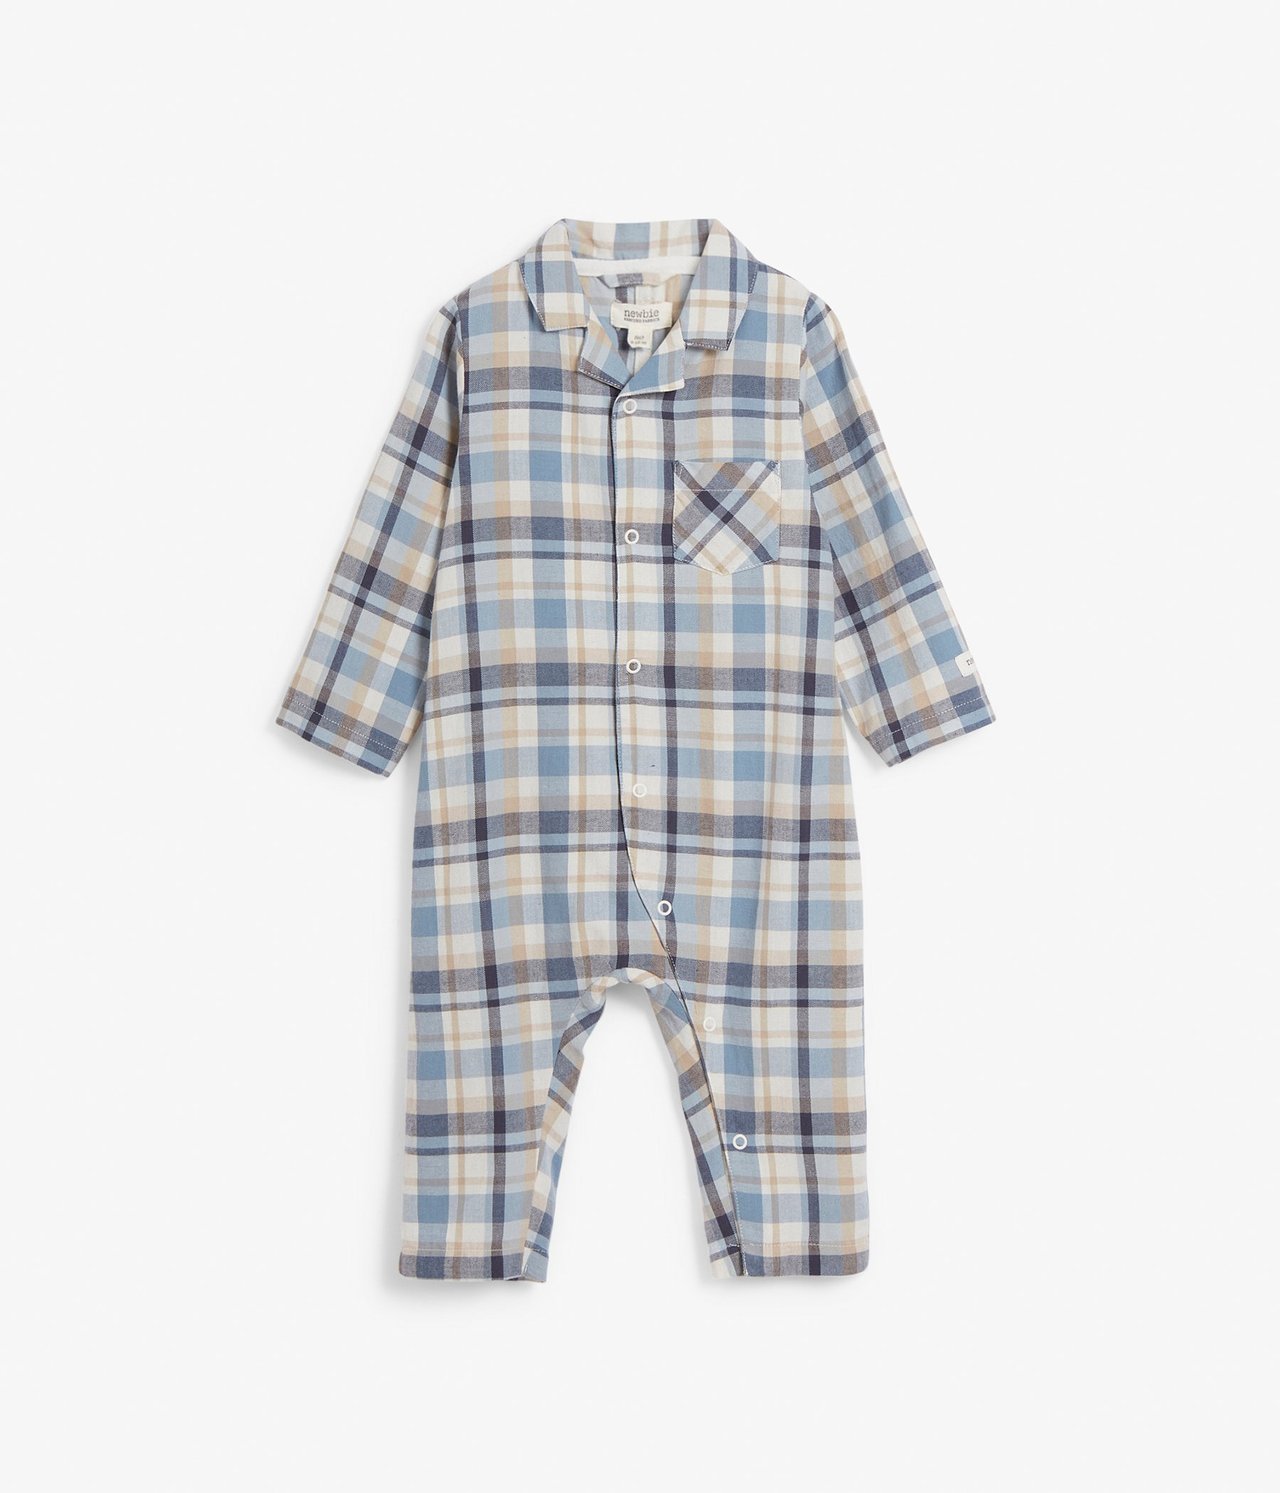 Ruudullinen vauvan pyjama.